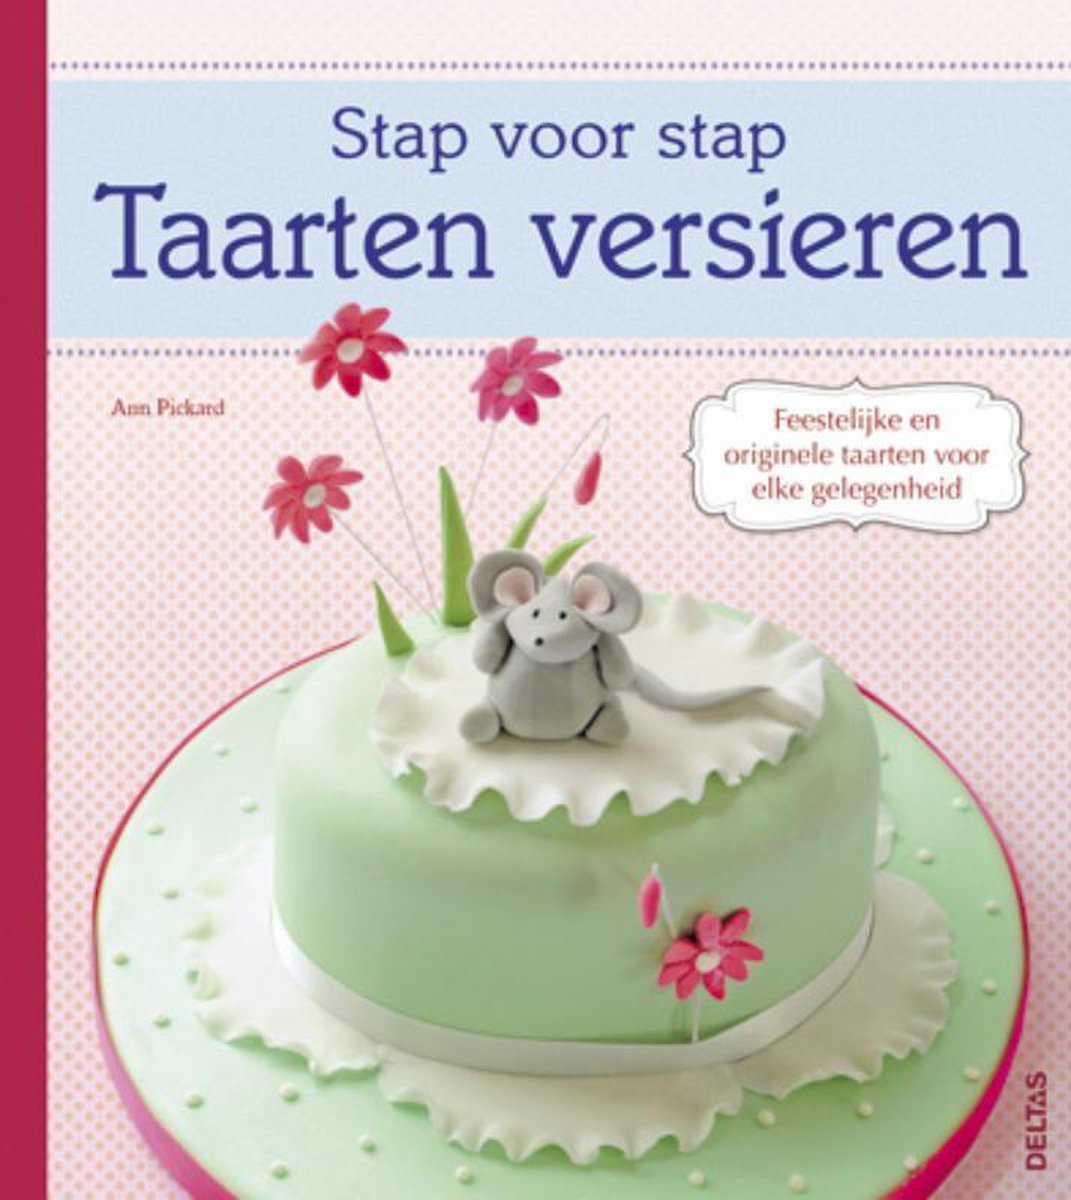 Verplicht Verplicht pen Stap voor stap - Taarten versieren, Ann Pickard | 9789044730883 | Boeken |  bol.com